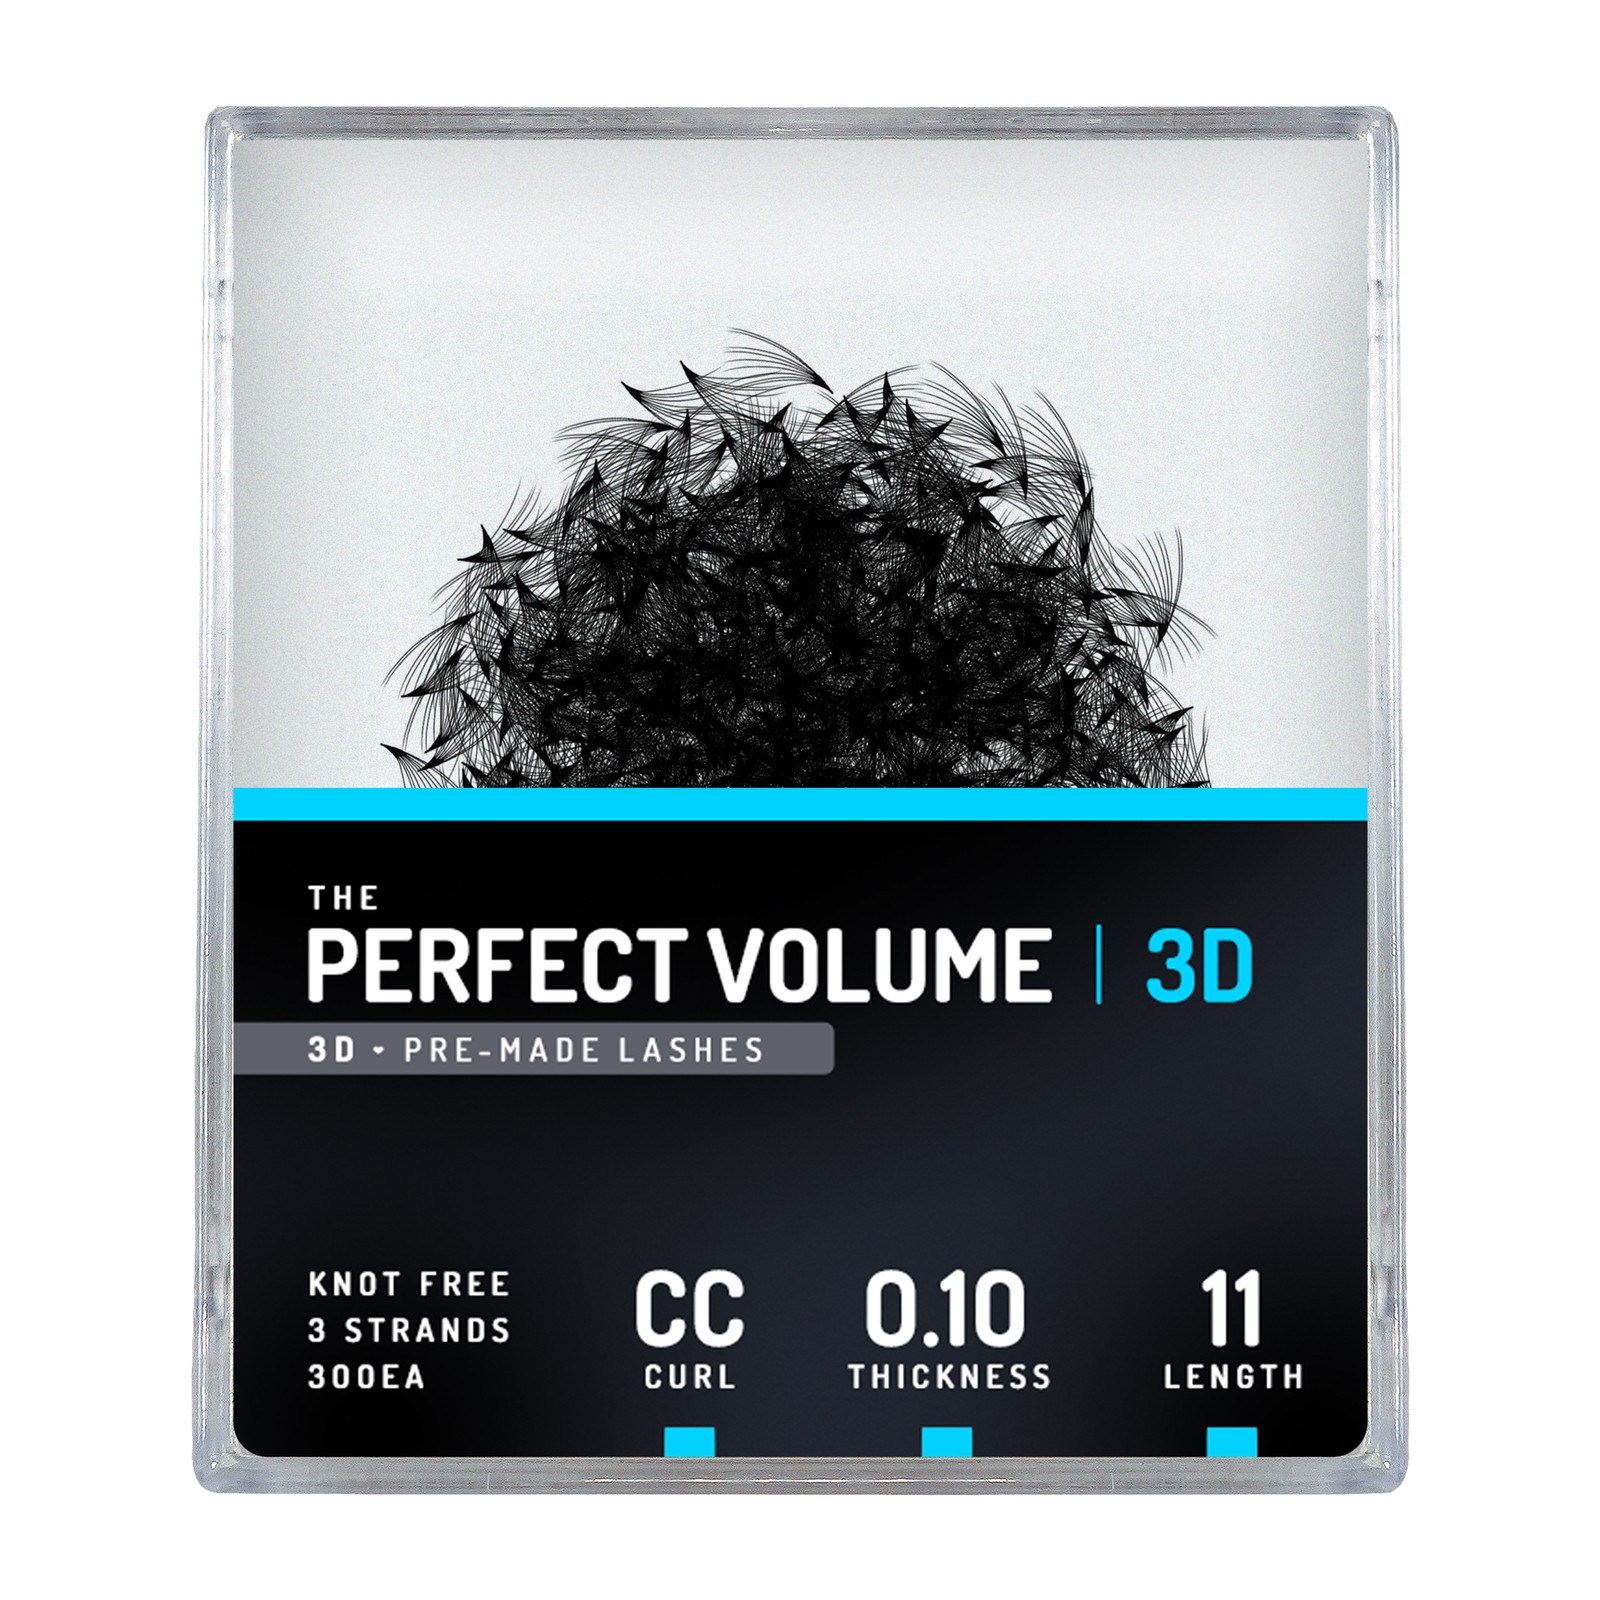 Volume parfait -  300 buchesele premade 3D -  11mm, CC, 0.10mm